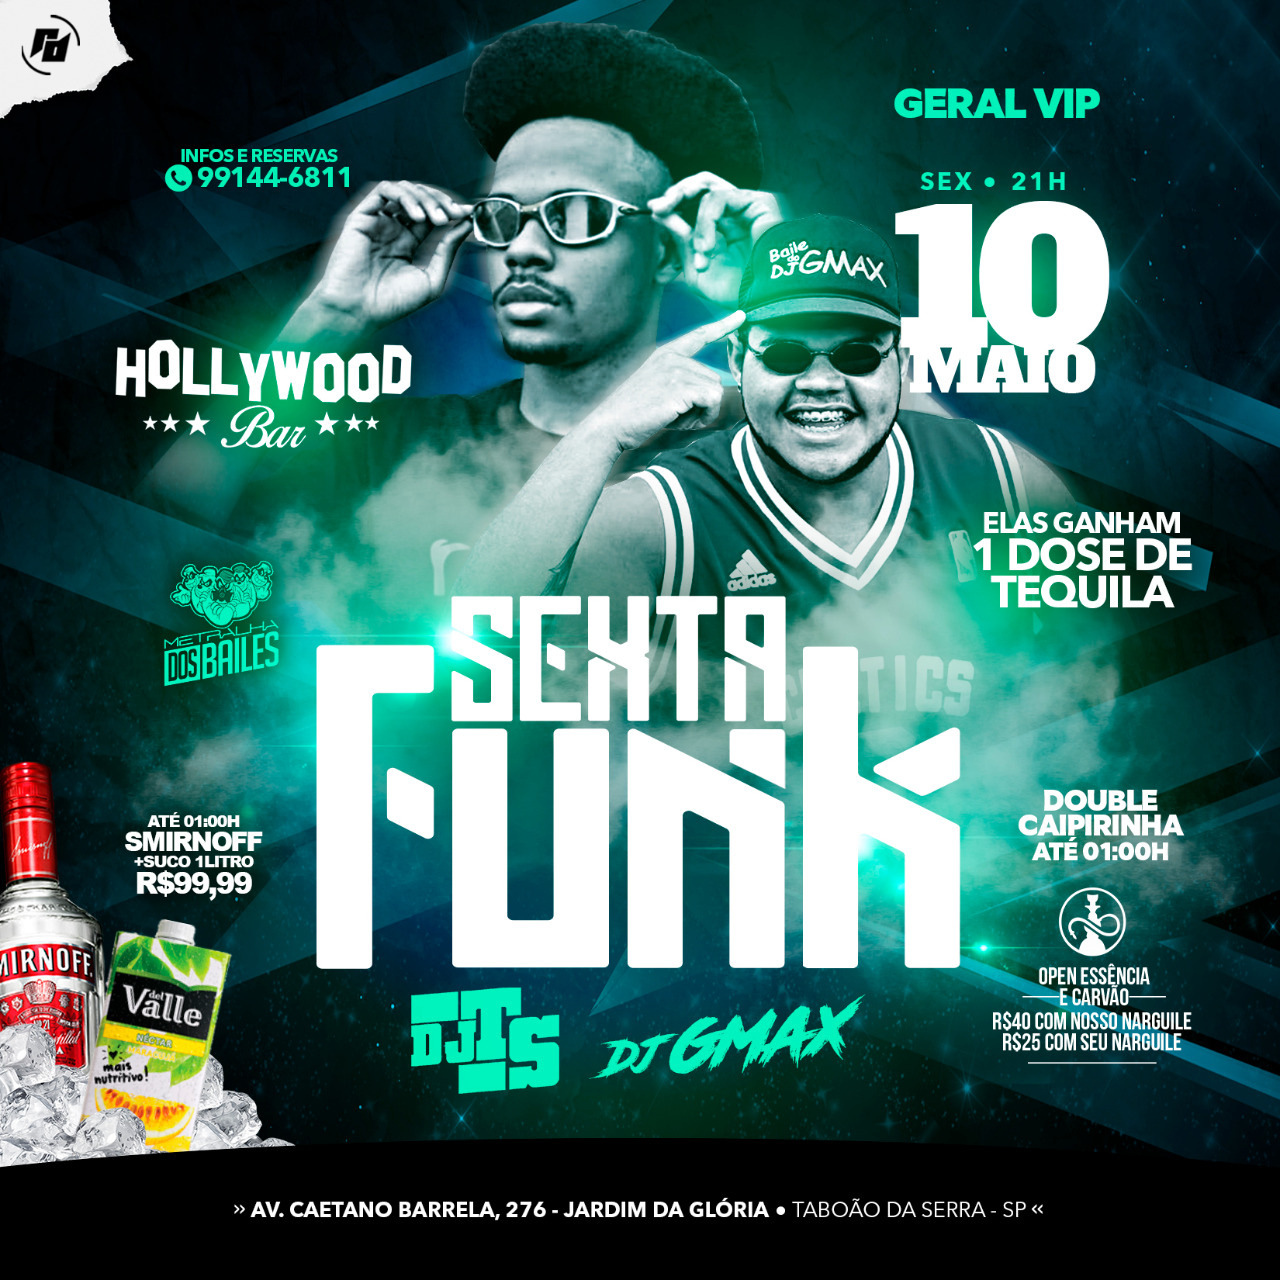 Hollywood Bar: SextaFunk 10/05 - Dj Gmax e Dj Ts